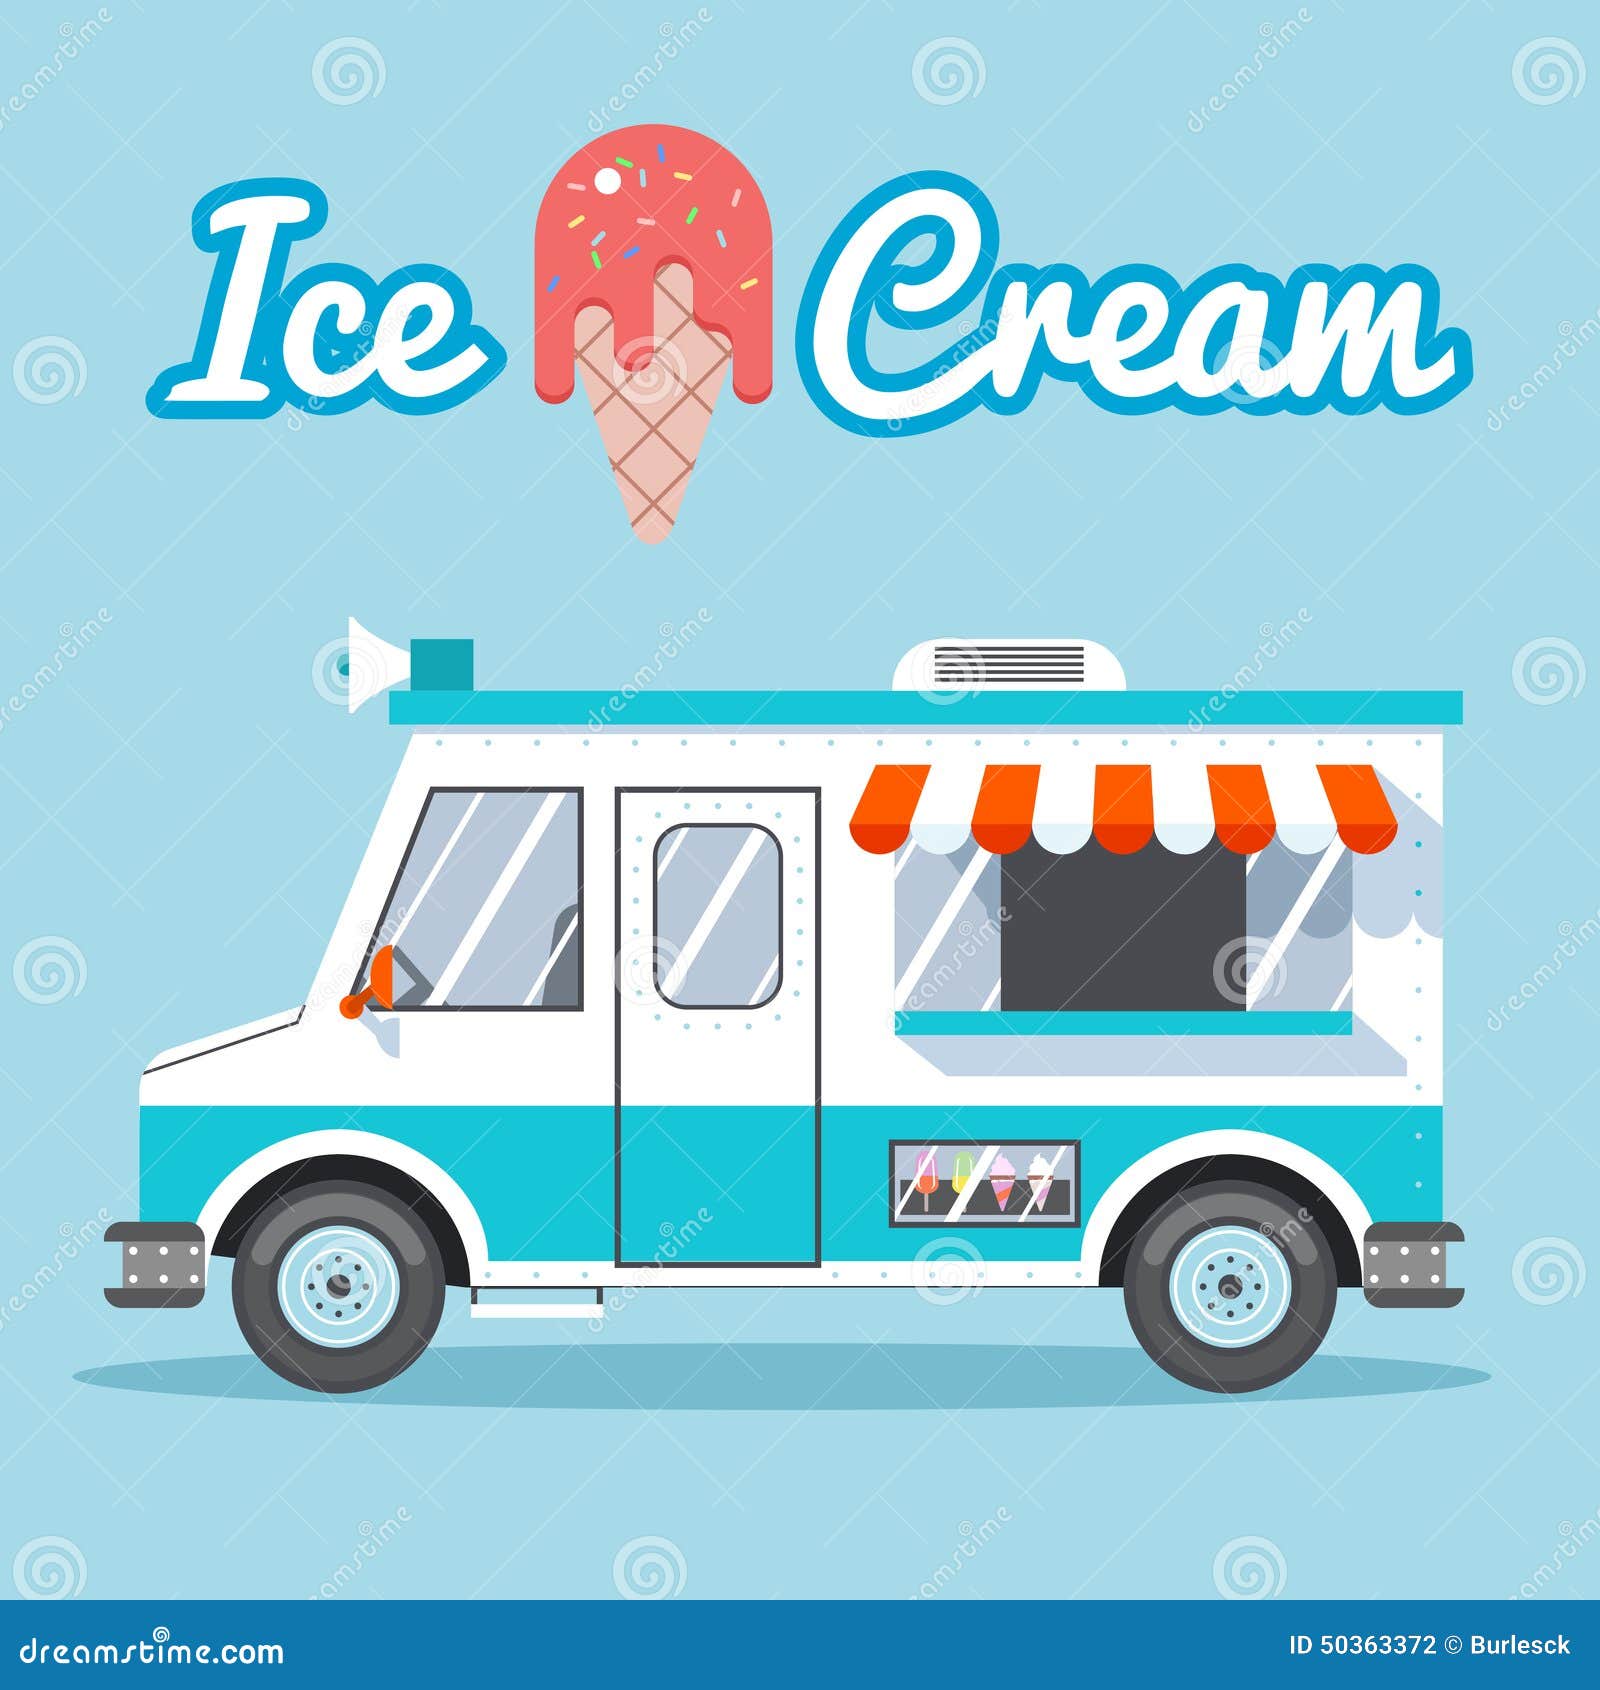 ice cream van clipart - photo #26